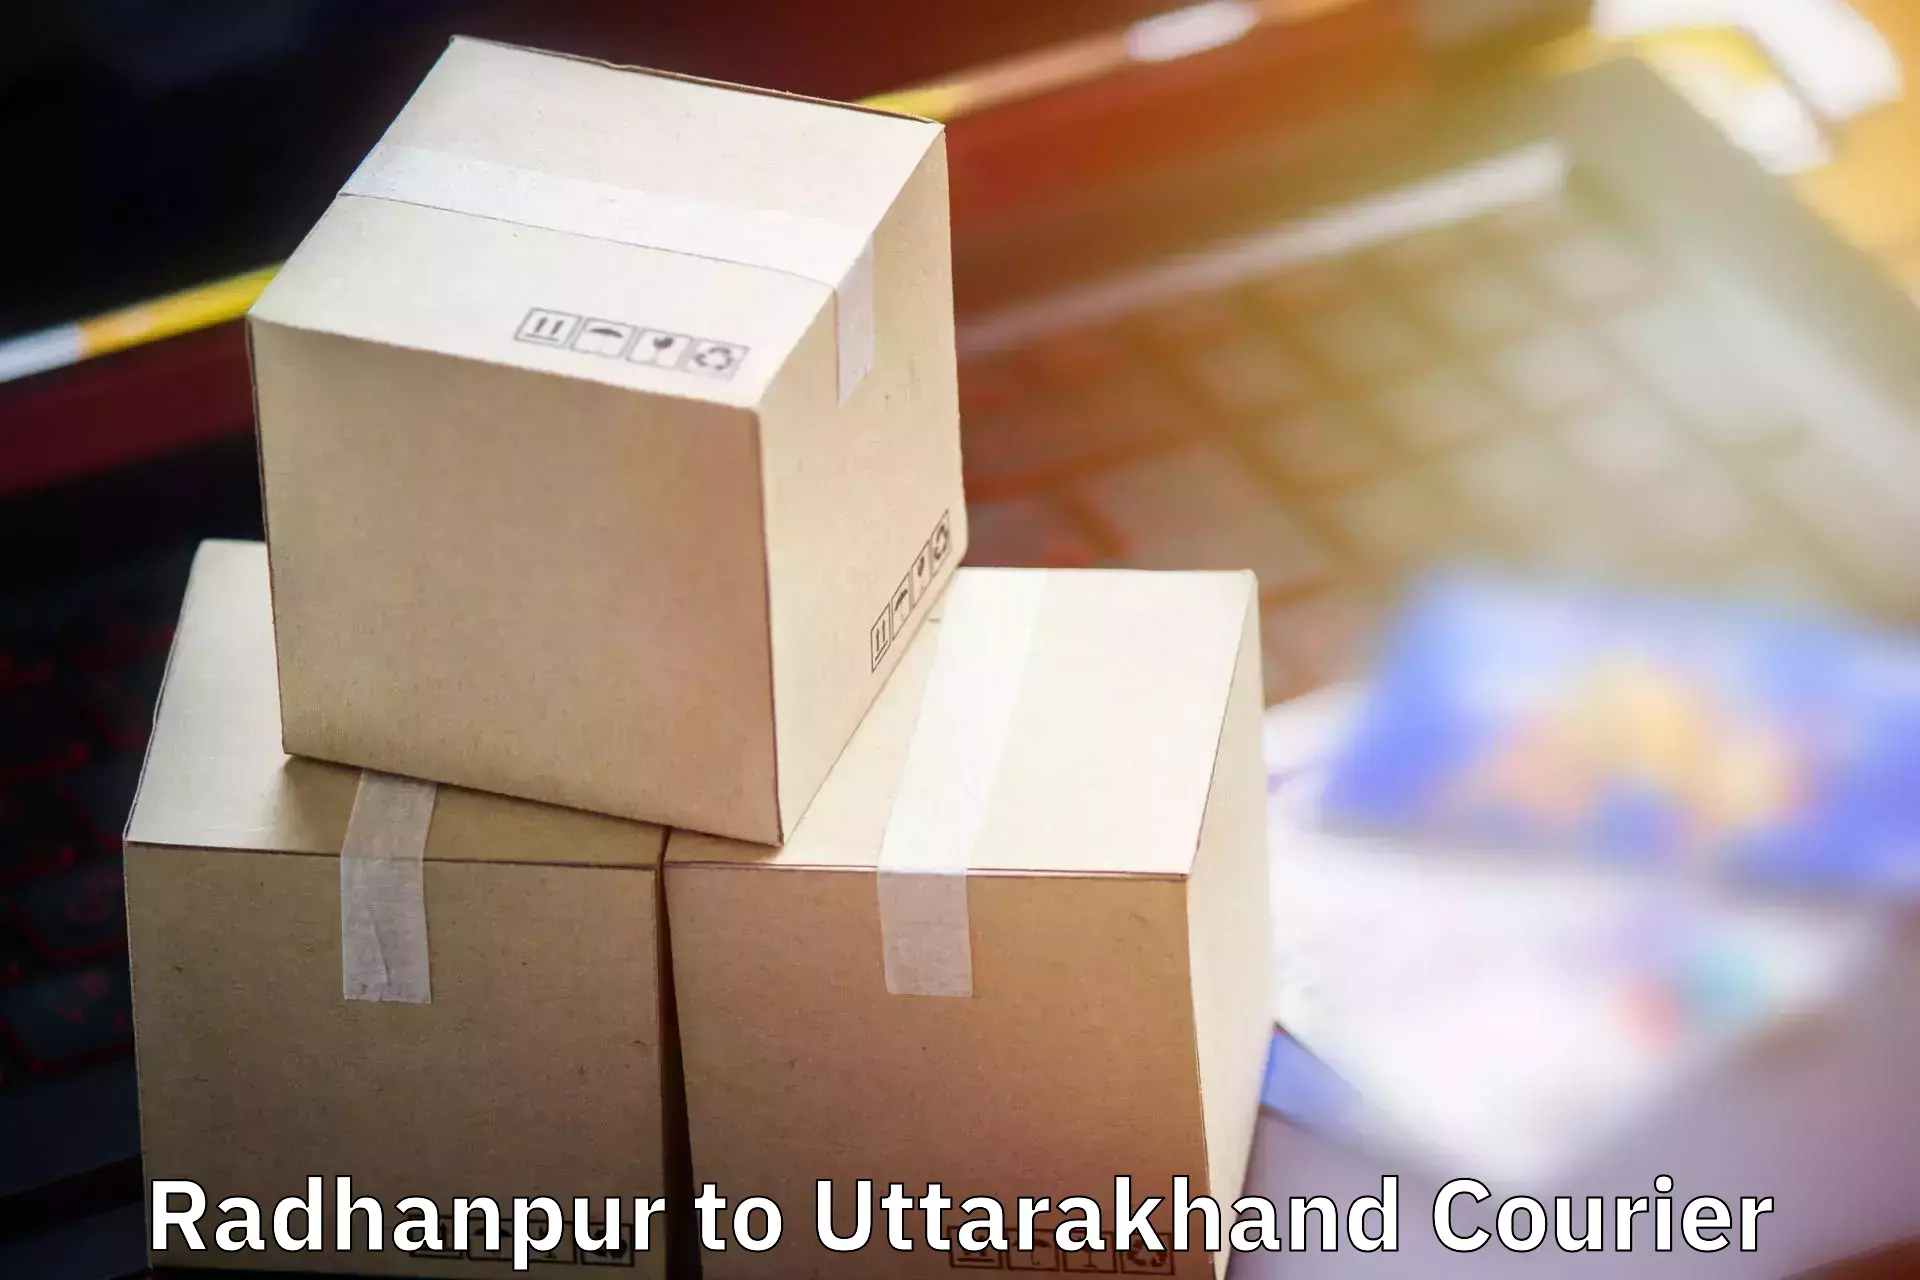 Luggage shipment tracking Radhanpur to Bhimtal